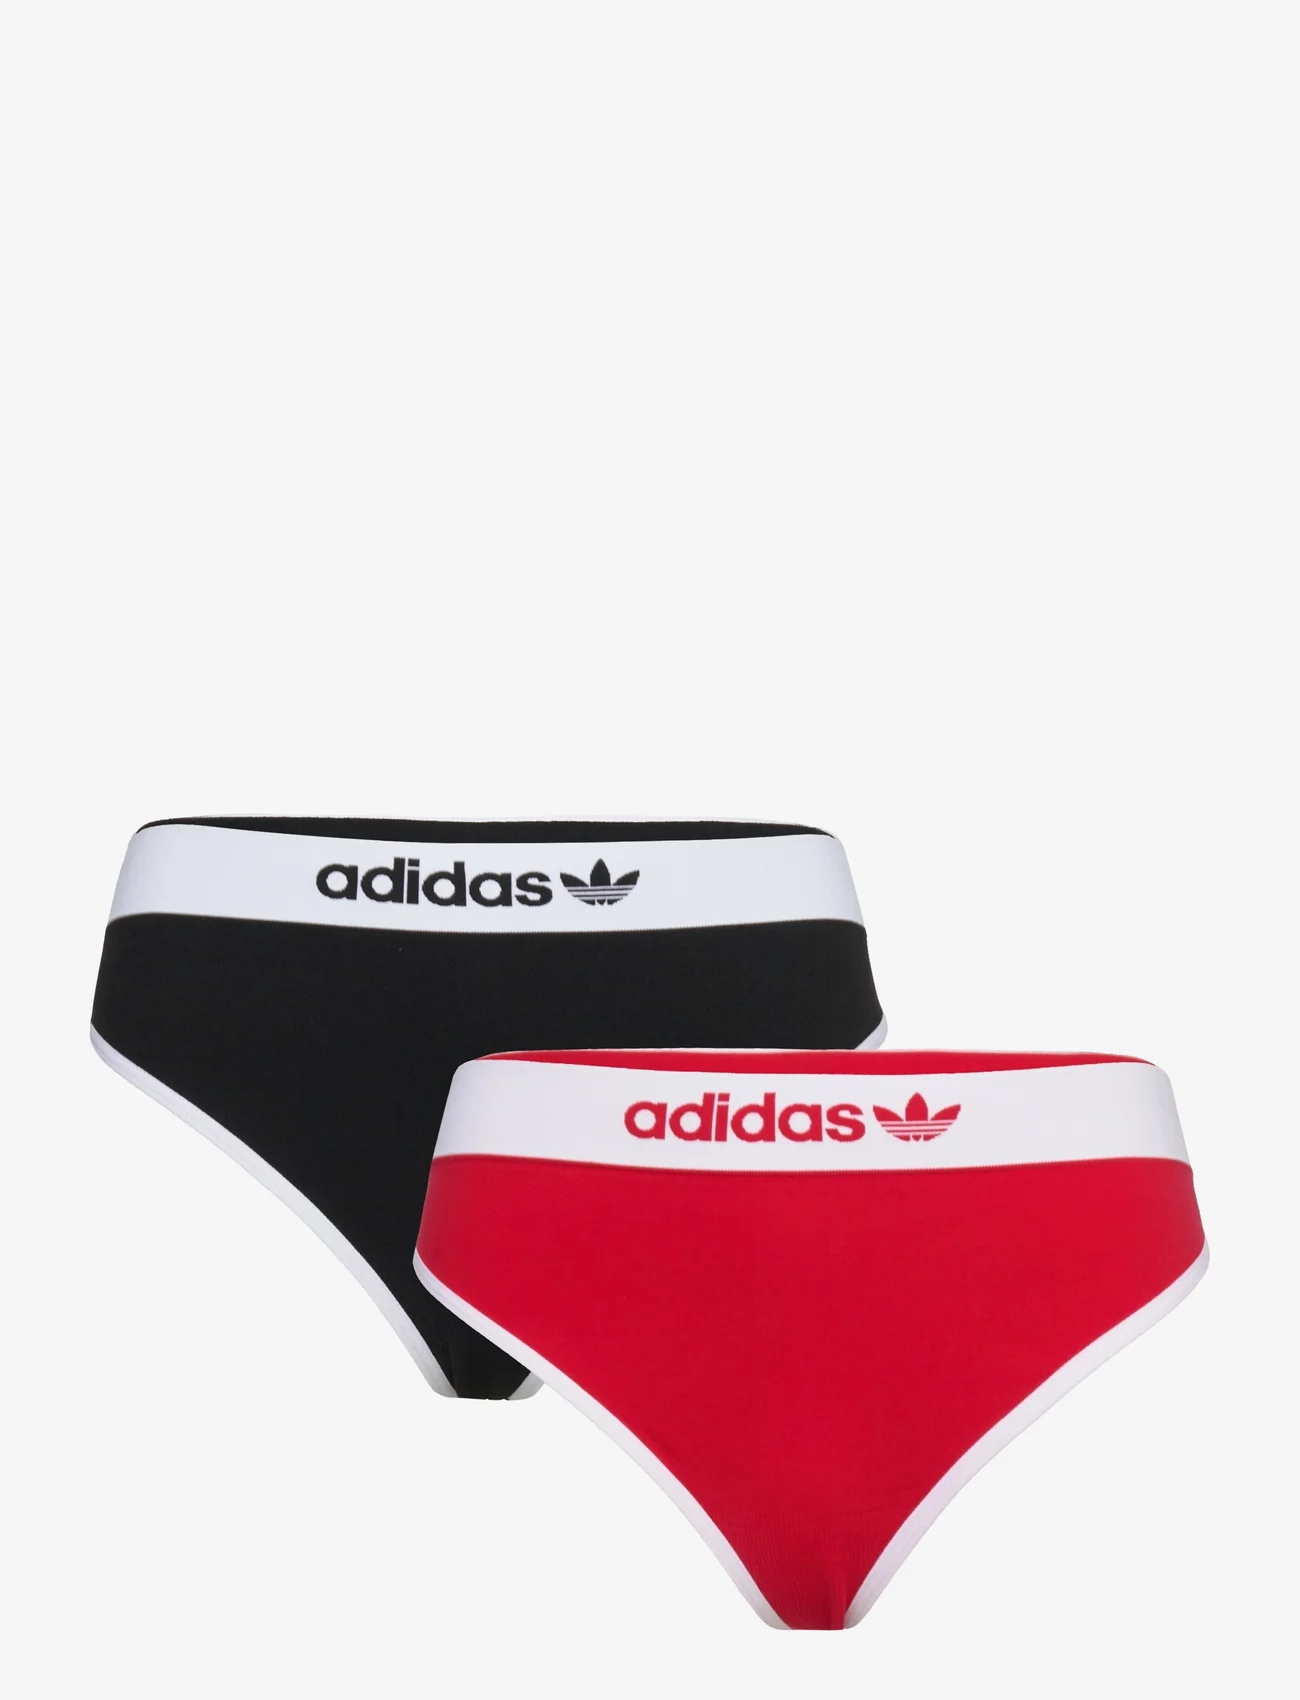 adidas Originals Underwear - Thong - die niedrigsten preise - assorted 5 - 0